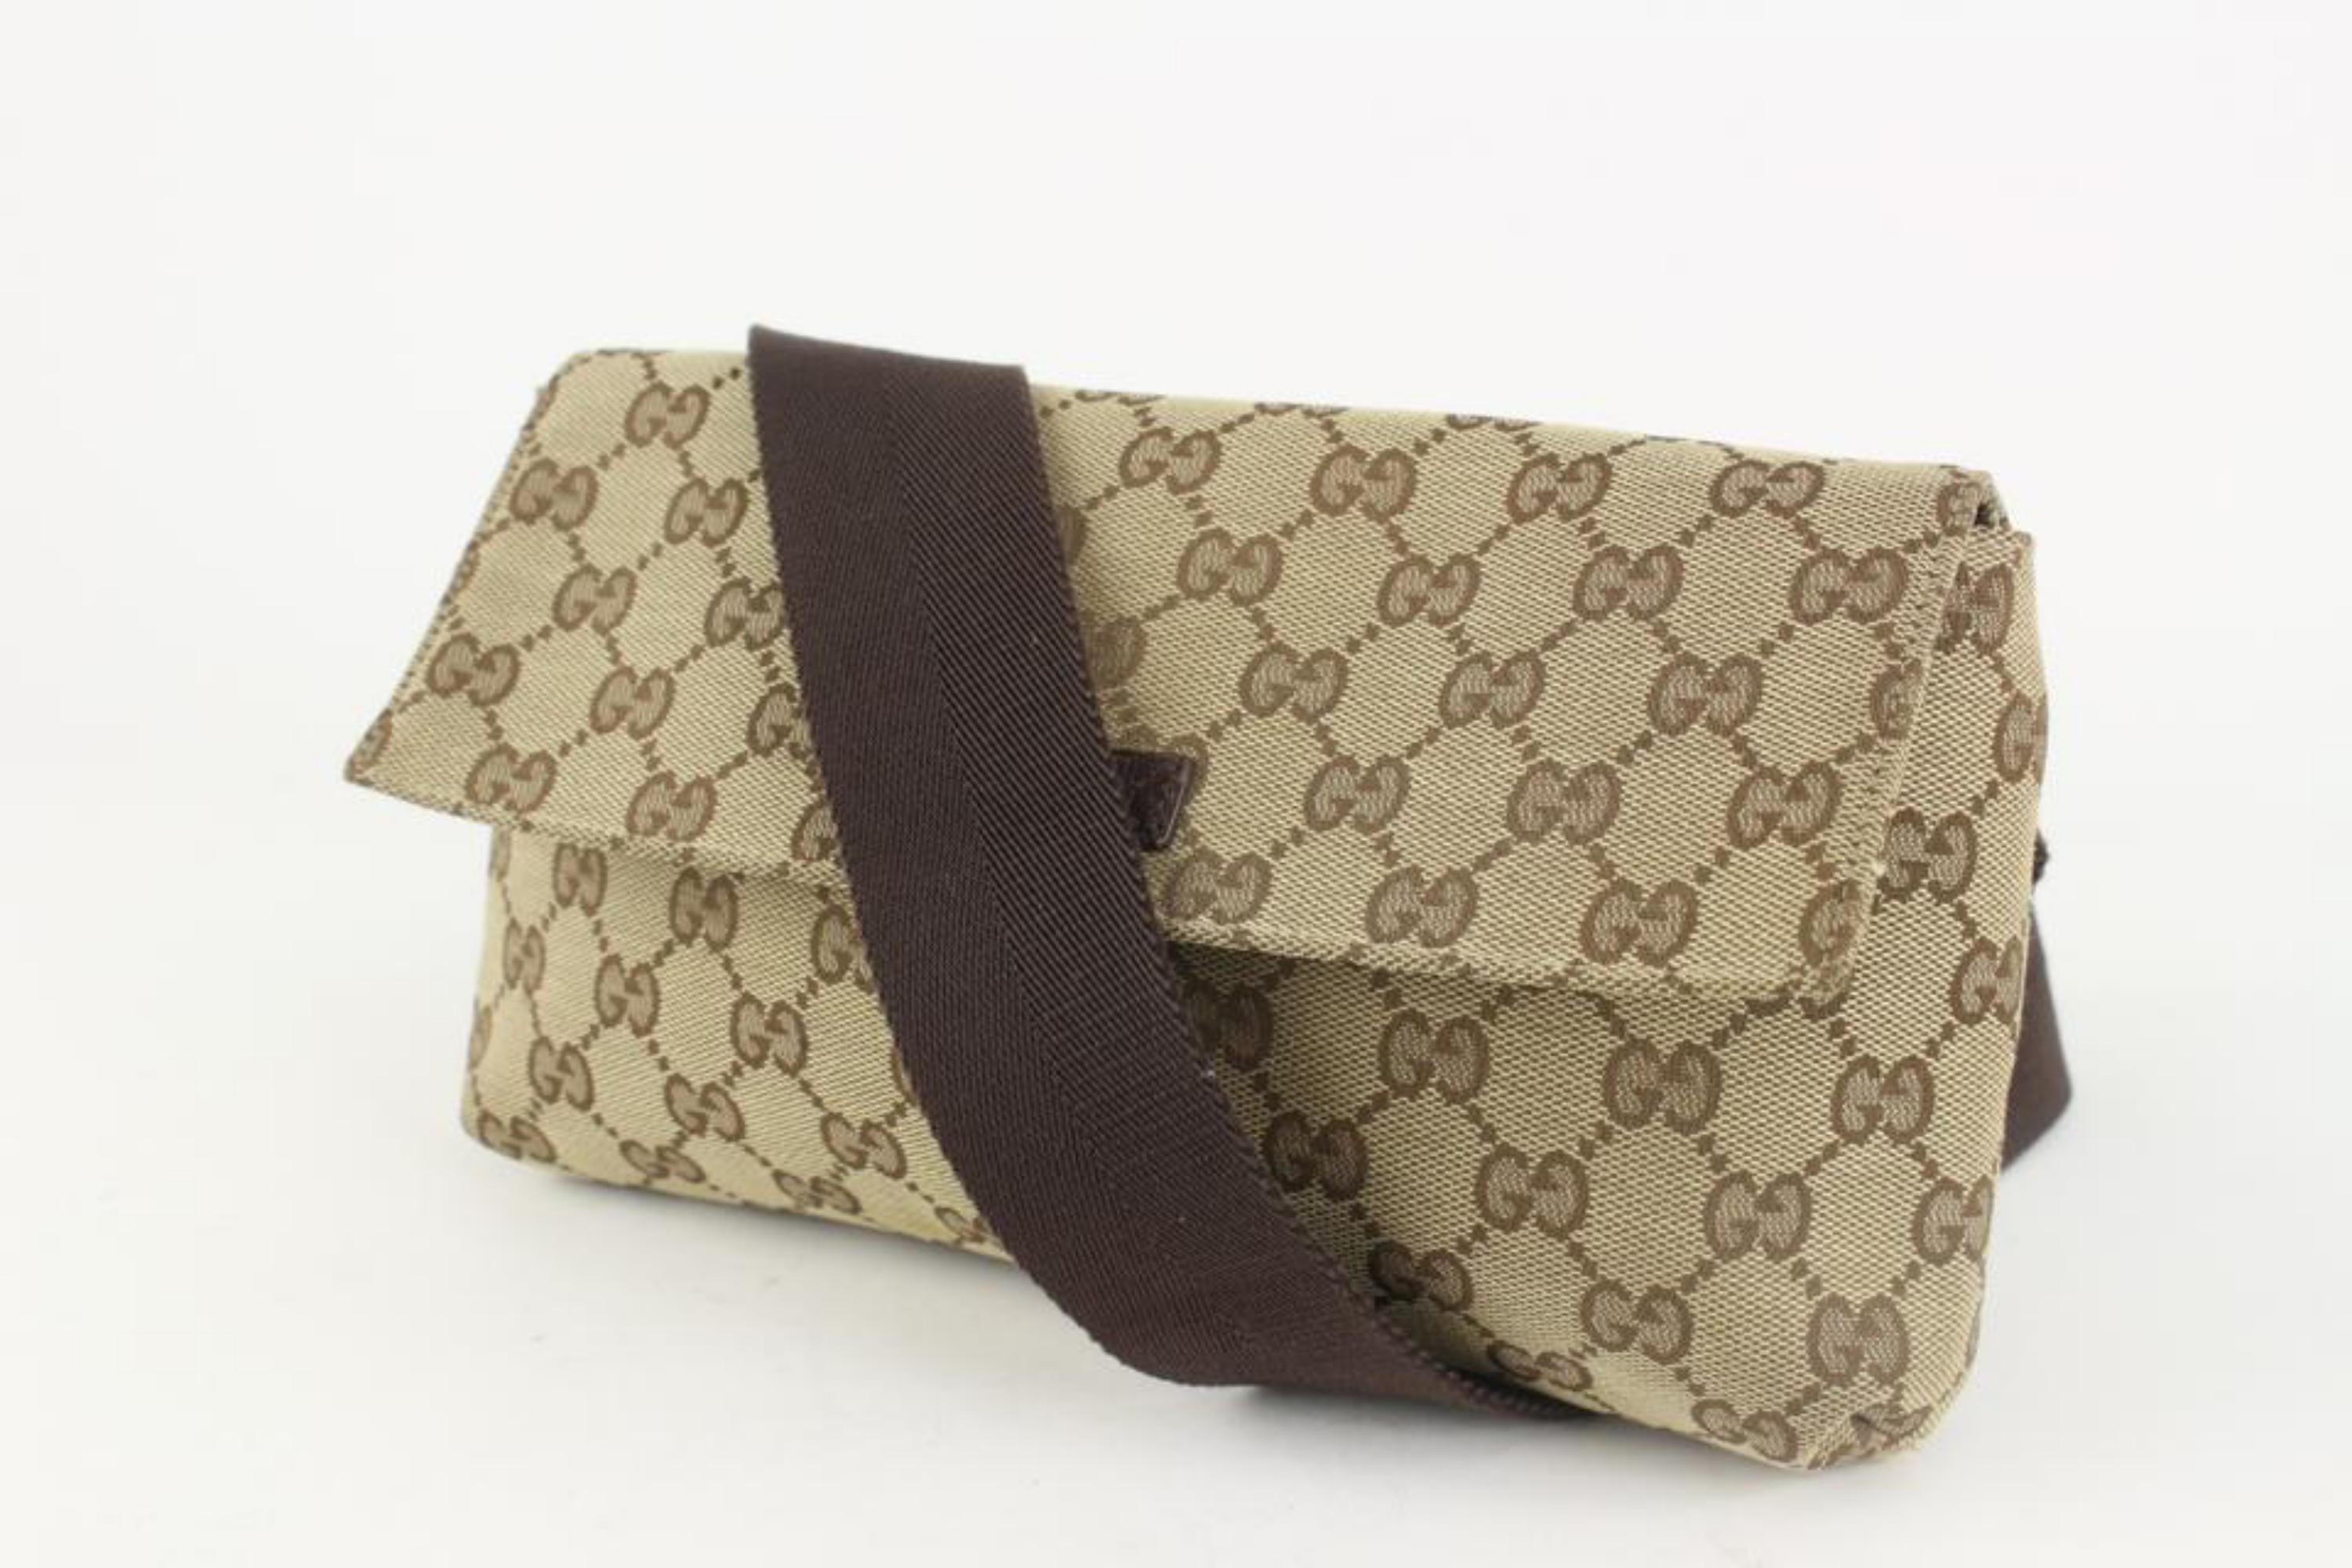 Gucci Monogram GG Flap Belt Bag Fanny Pack Waist Pouch 1215g46 6